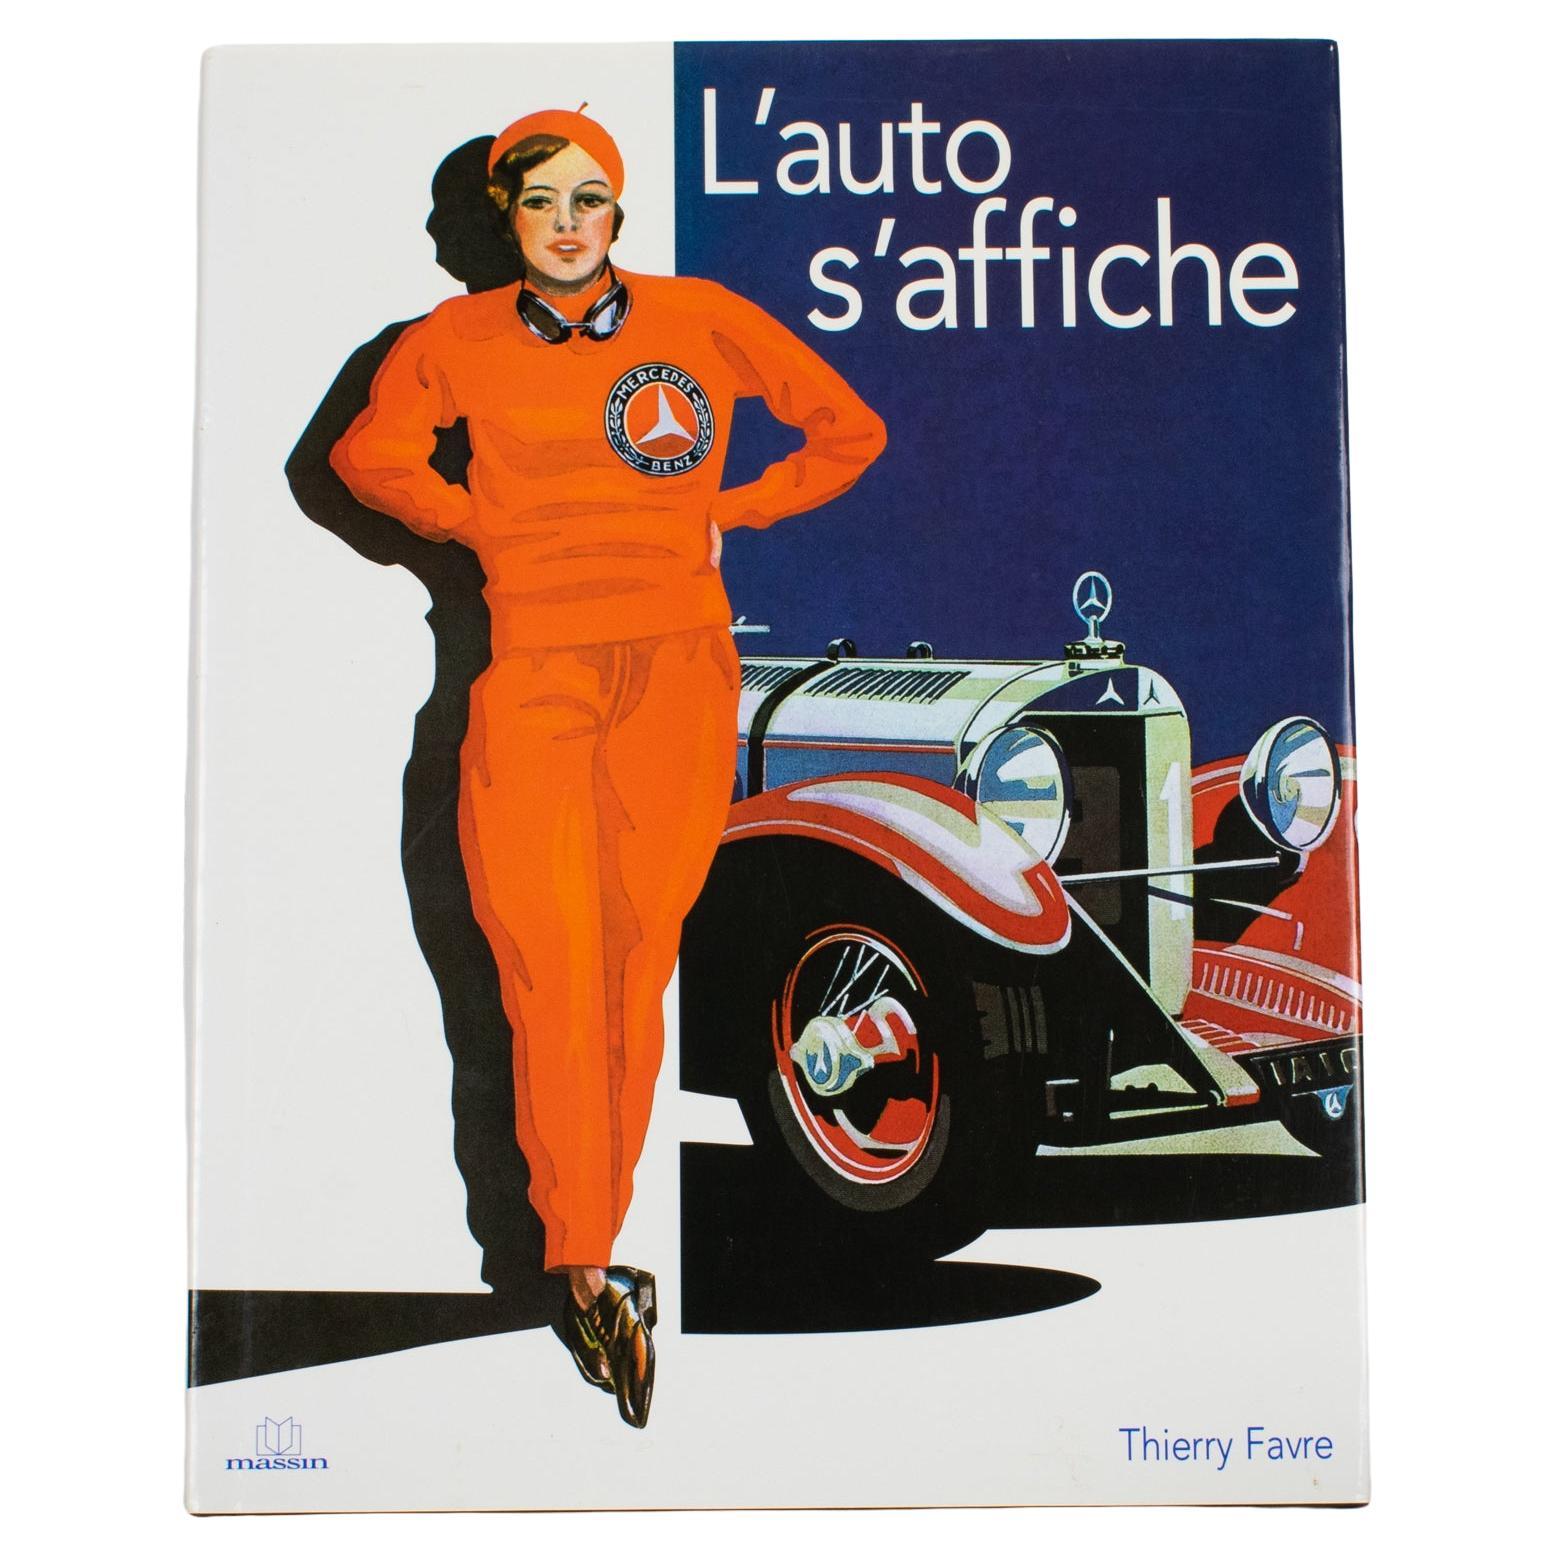 The Cars in Posters, livre français de Thierry Favre, 2007